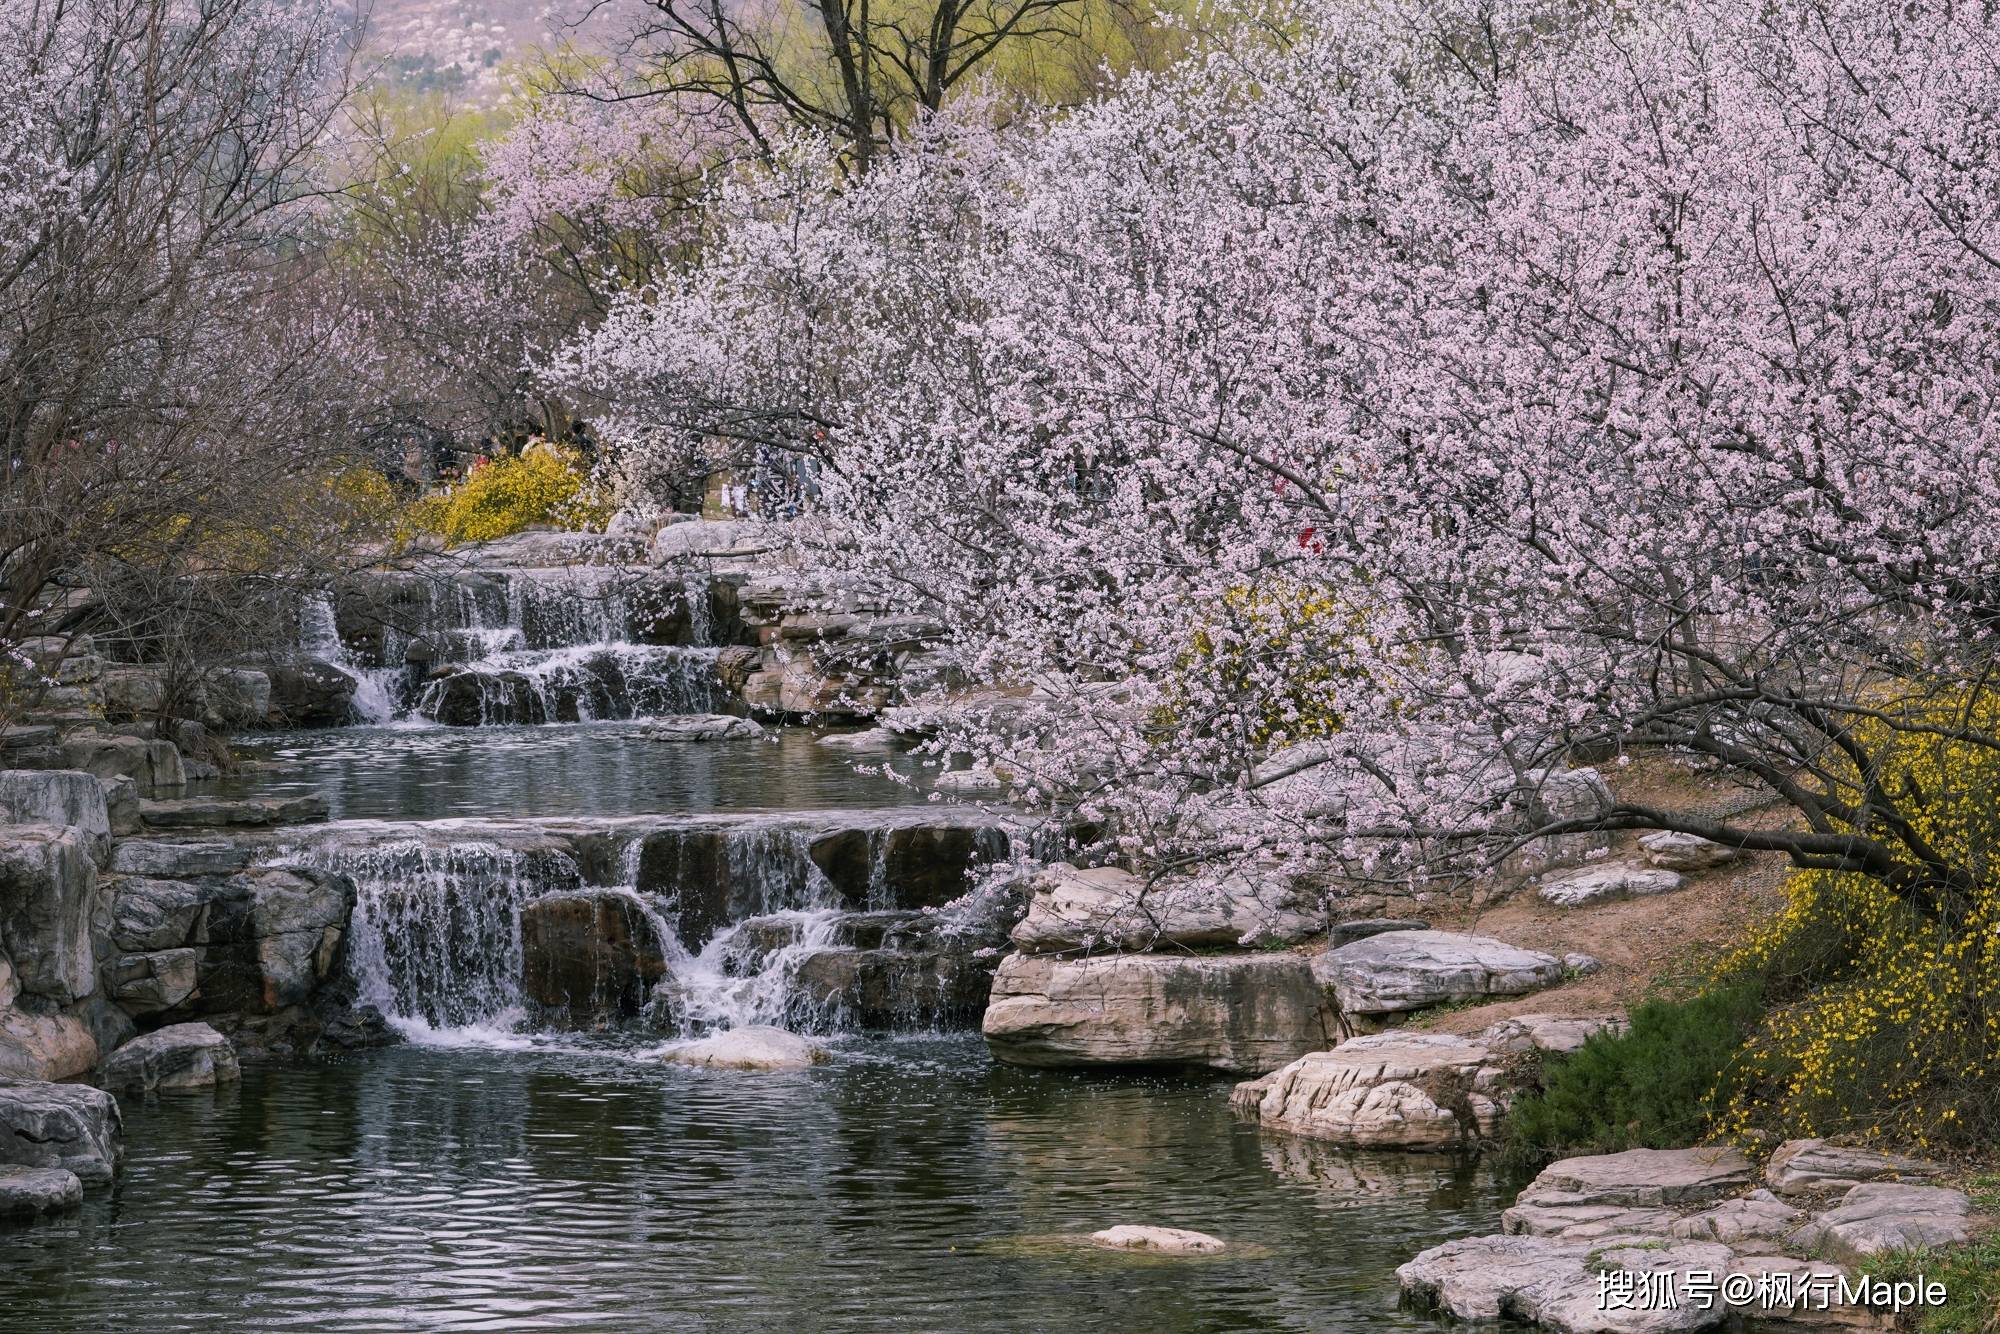 北京香山脚下,藏着一条美丽的桃花溪,满园春色,低调而美丽!